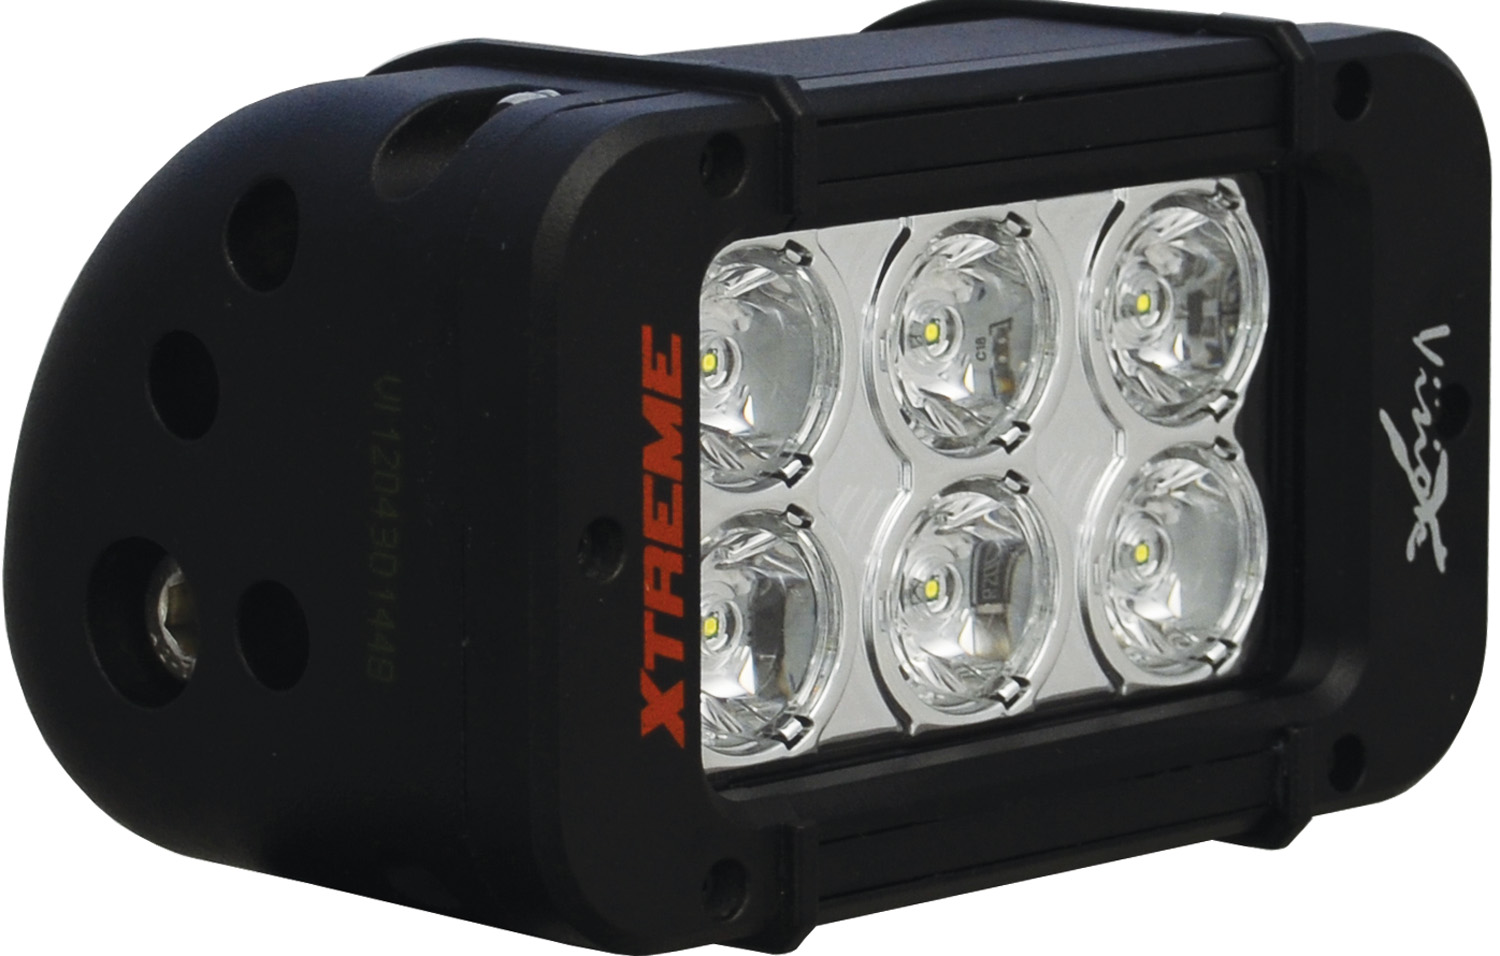 5" XMITTER PRIME XTREME LED BAR BLACK 6 LED'S 10ç NARROW